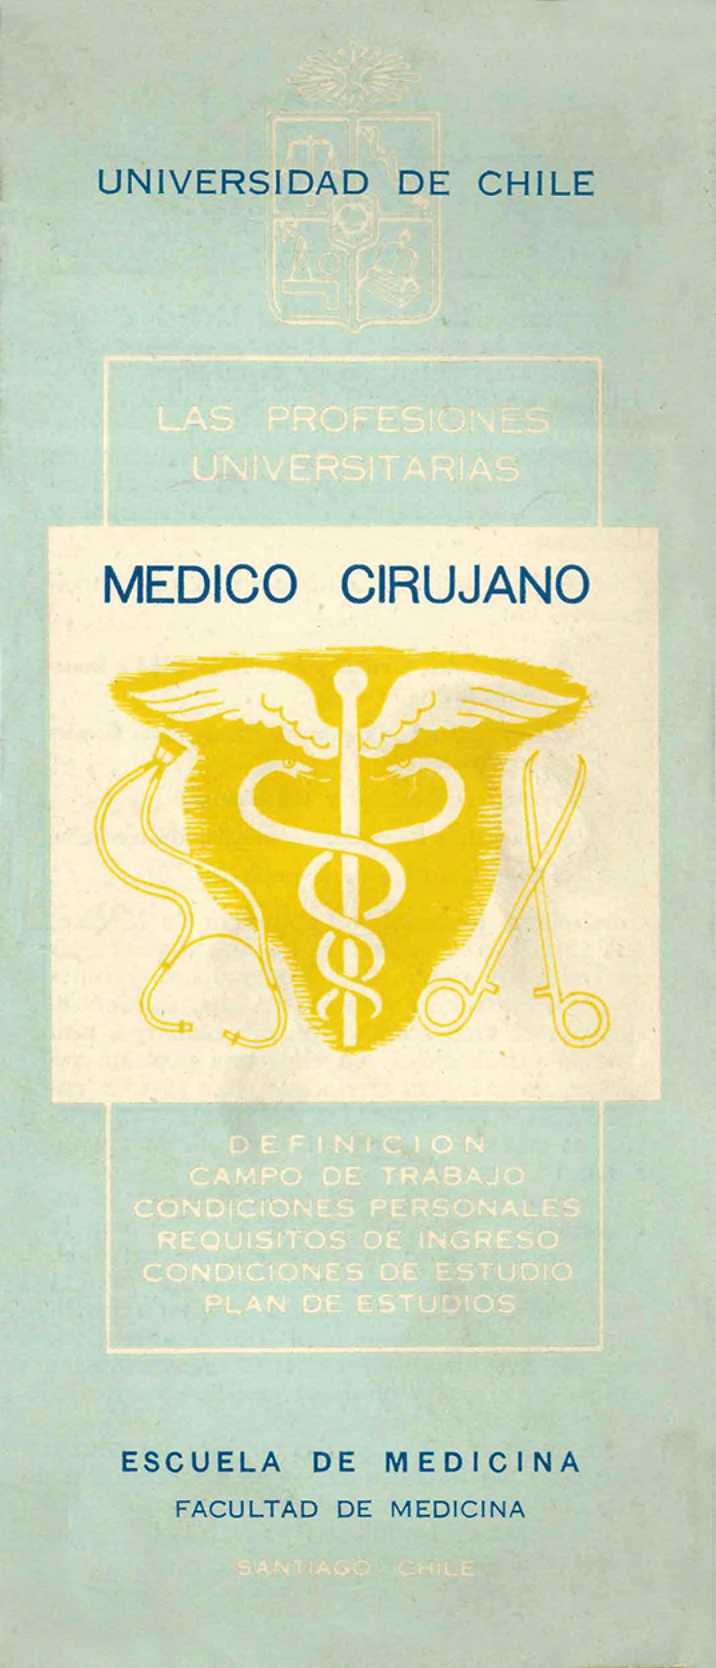 UNIVERSIDAD DE CHILE MEDICO CIRUJANO